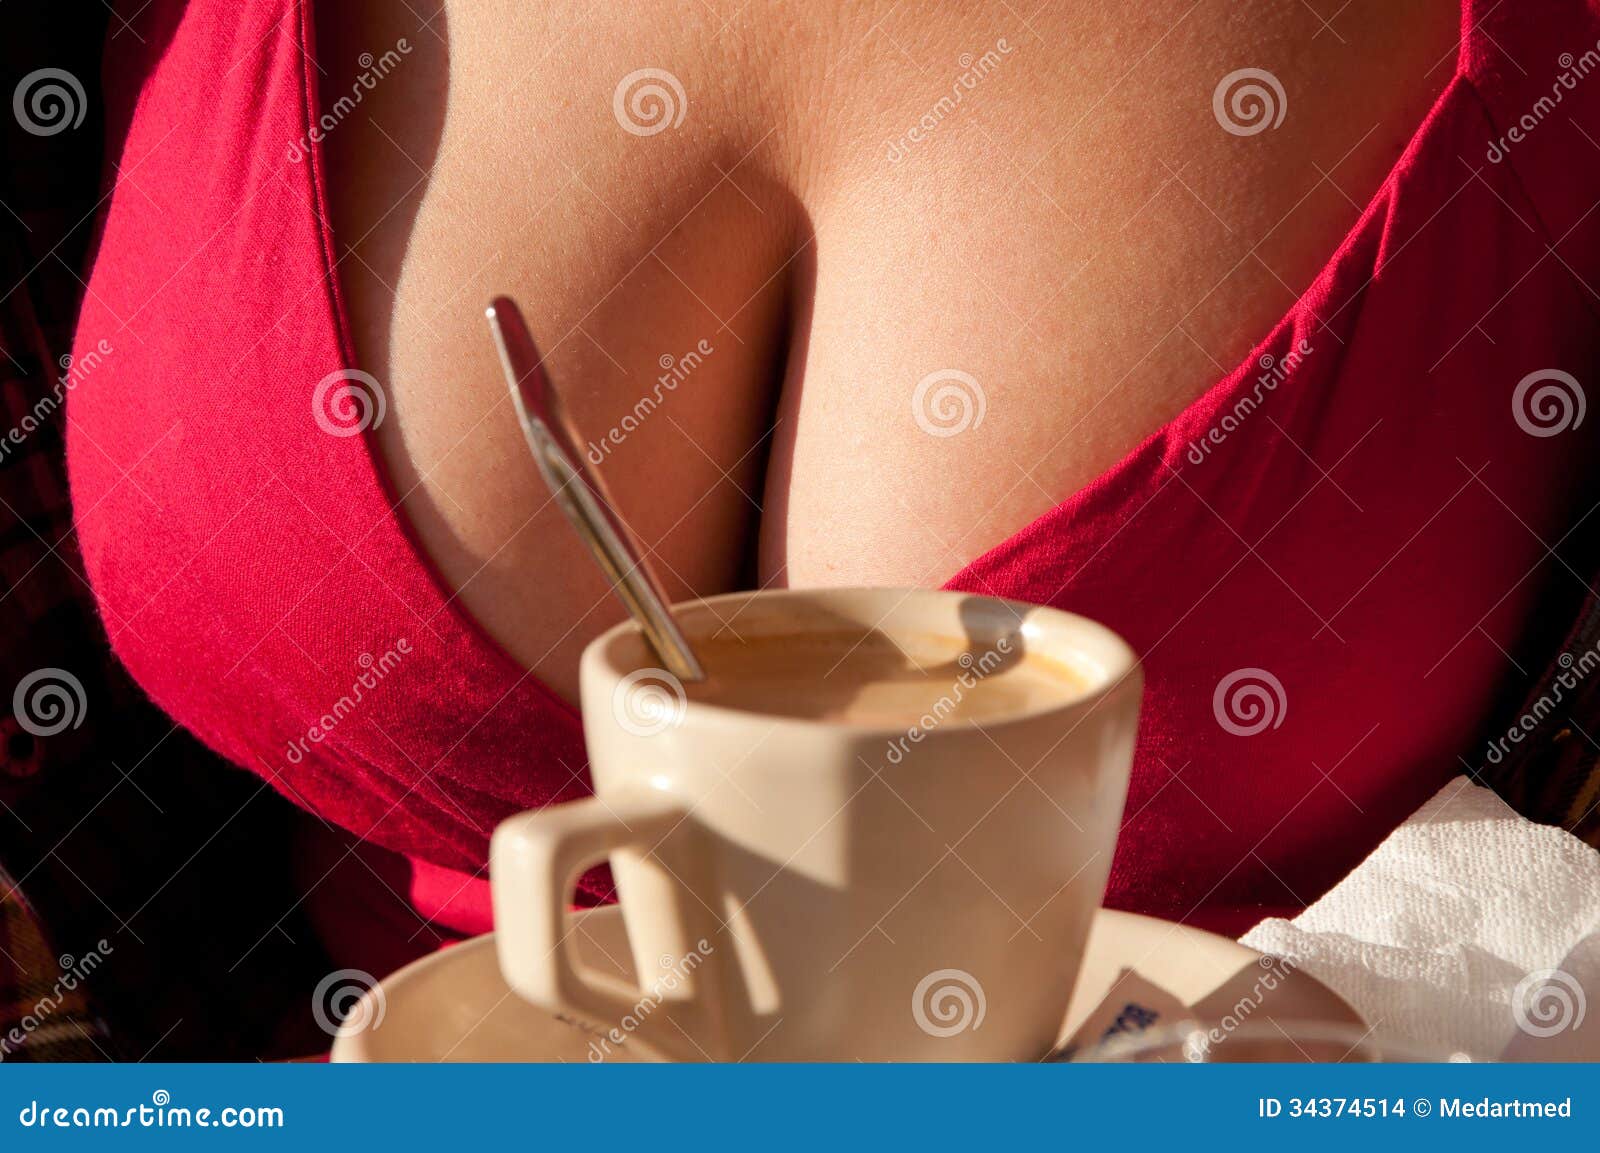 чае с молоком для груди фото 7